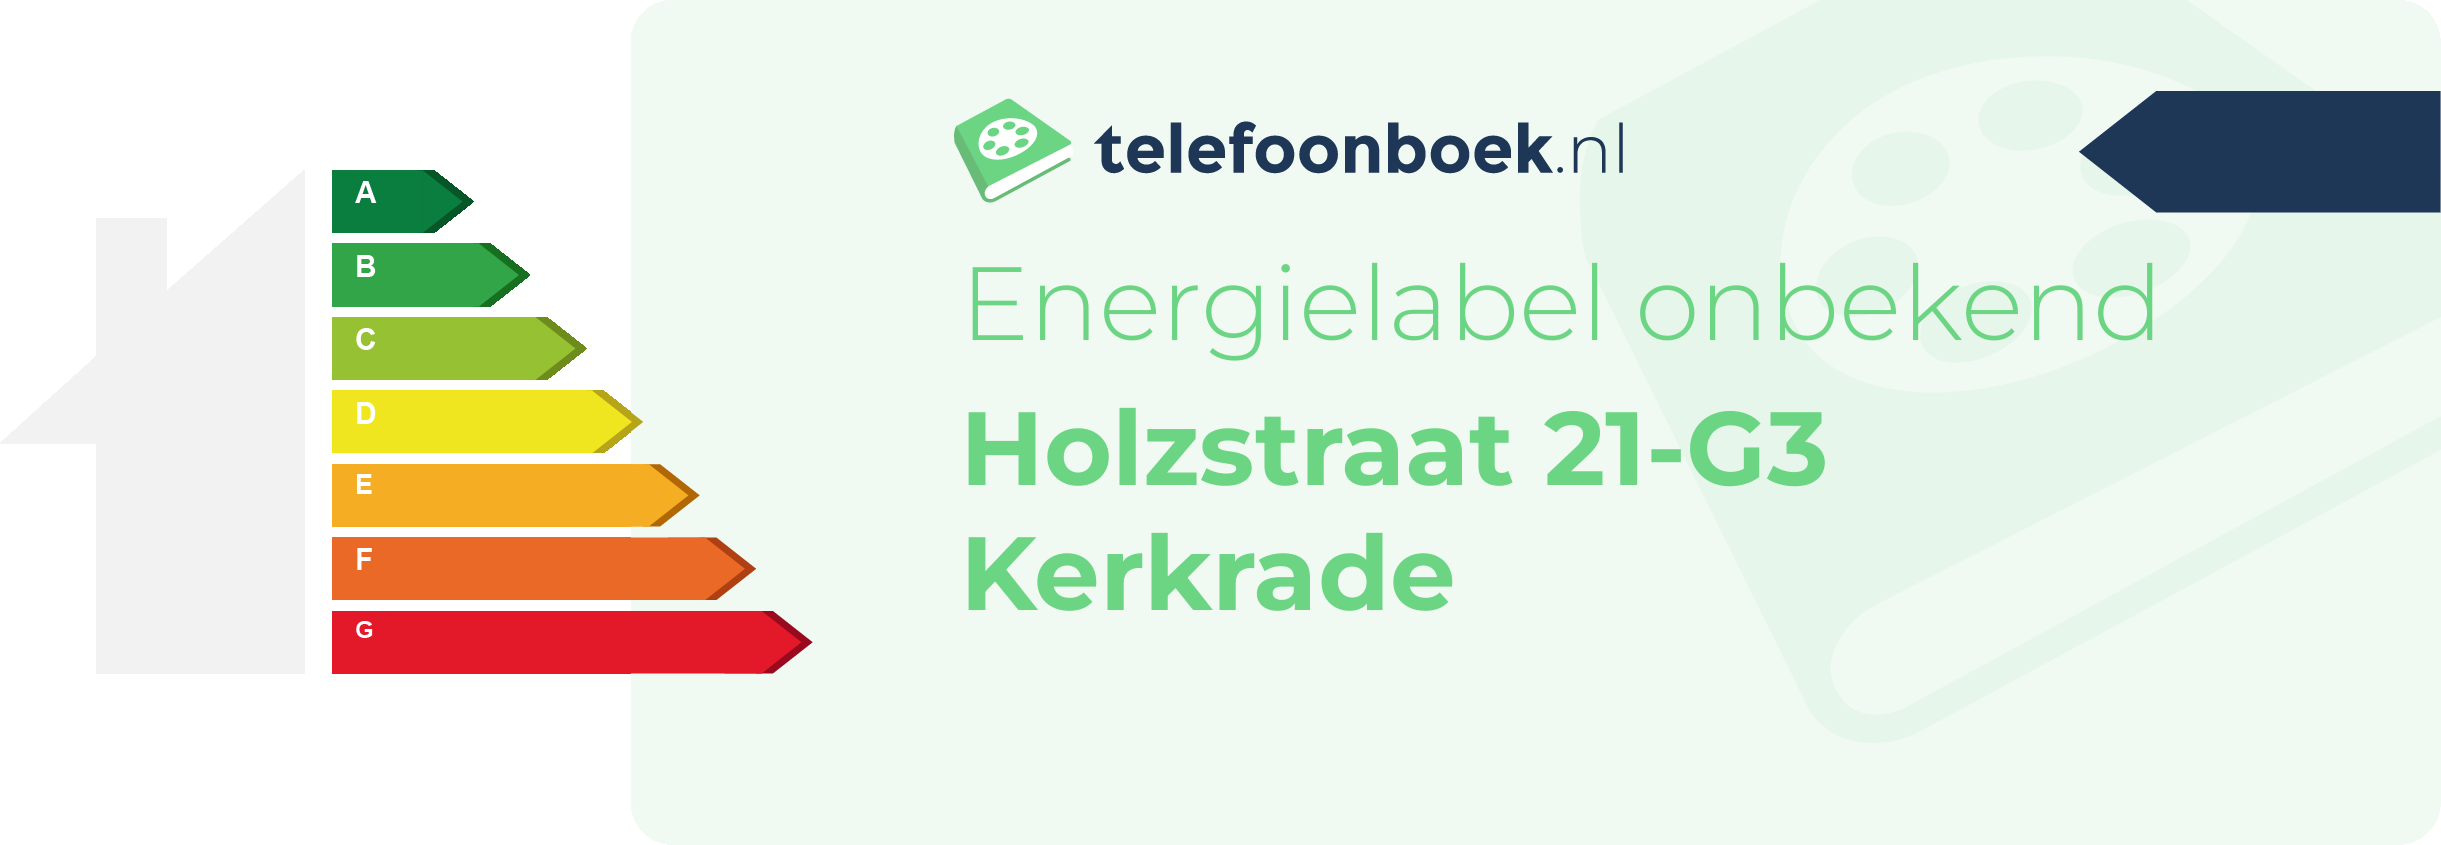 Energielabel Holzstraat 21-G3 Kerkrade